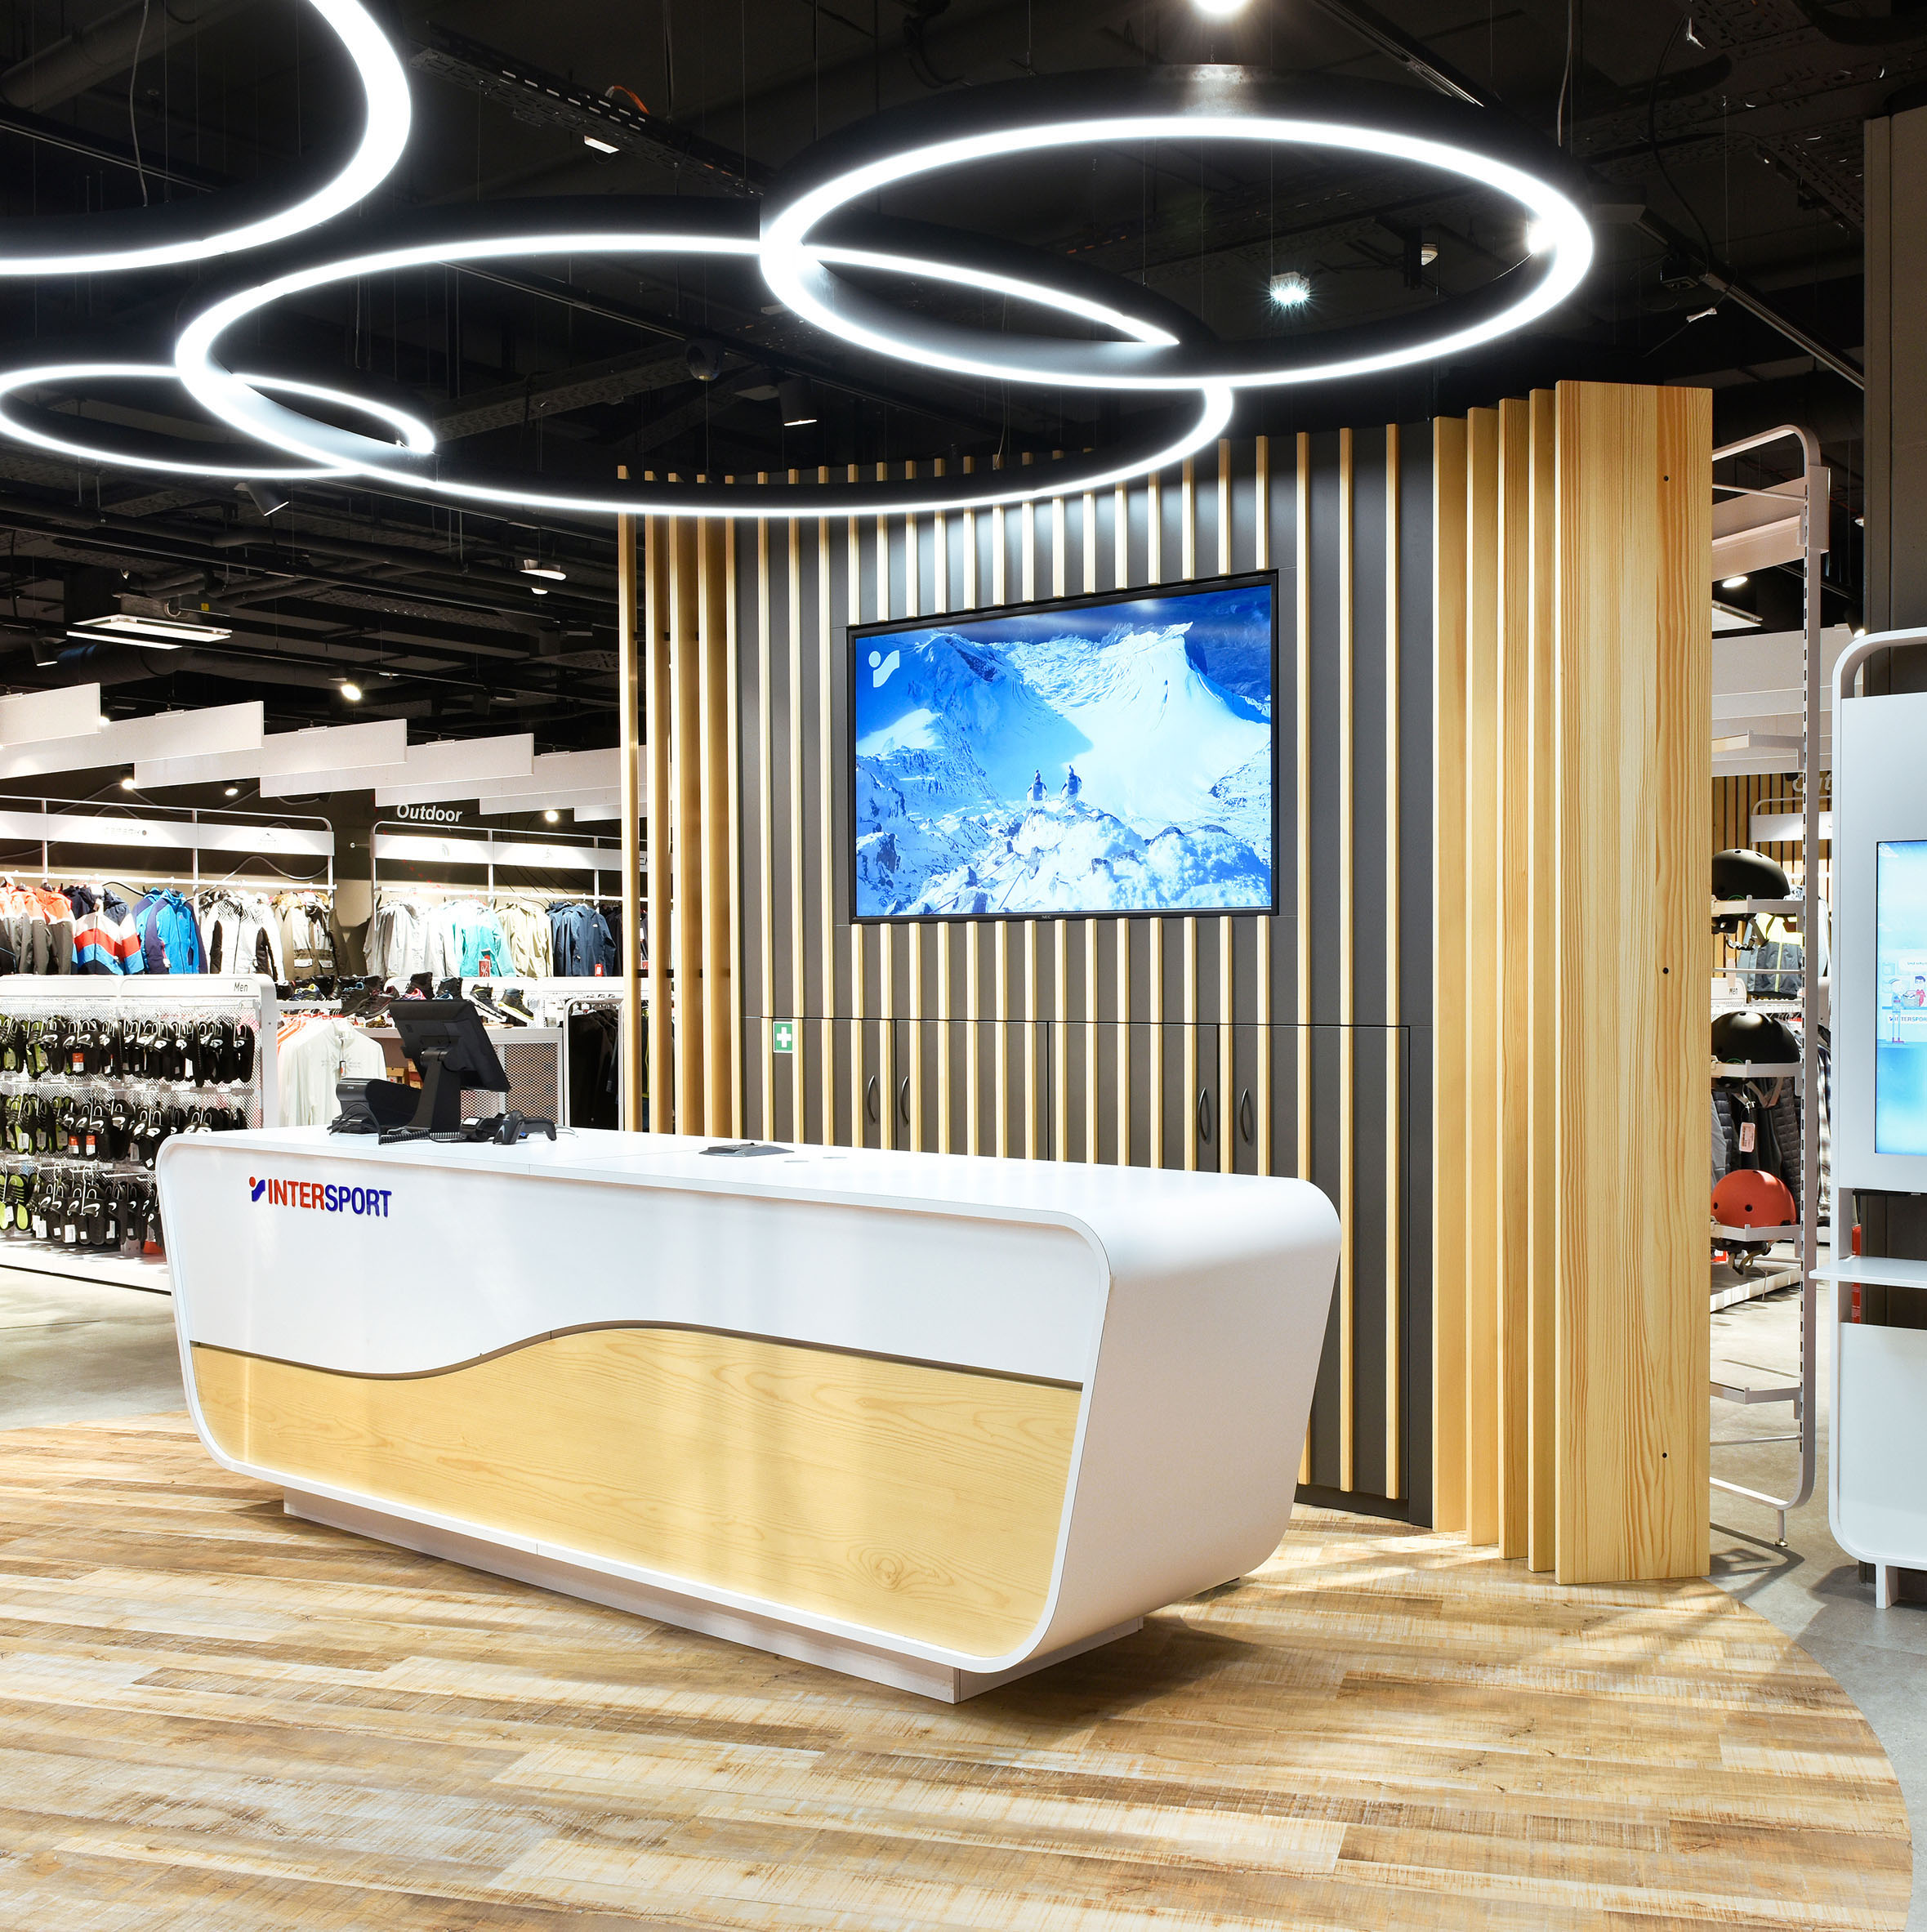 Intersport Wawrok Nette+Hartmann Shop Design Hamburg Stores Trend Cash Desk Wood